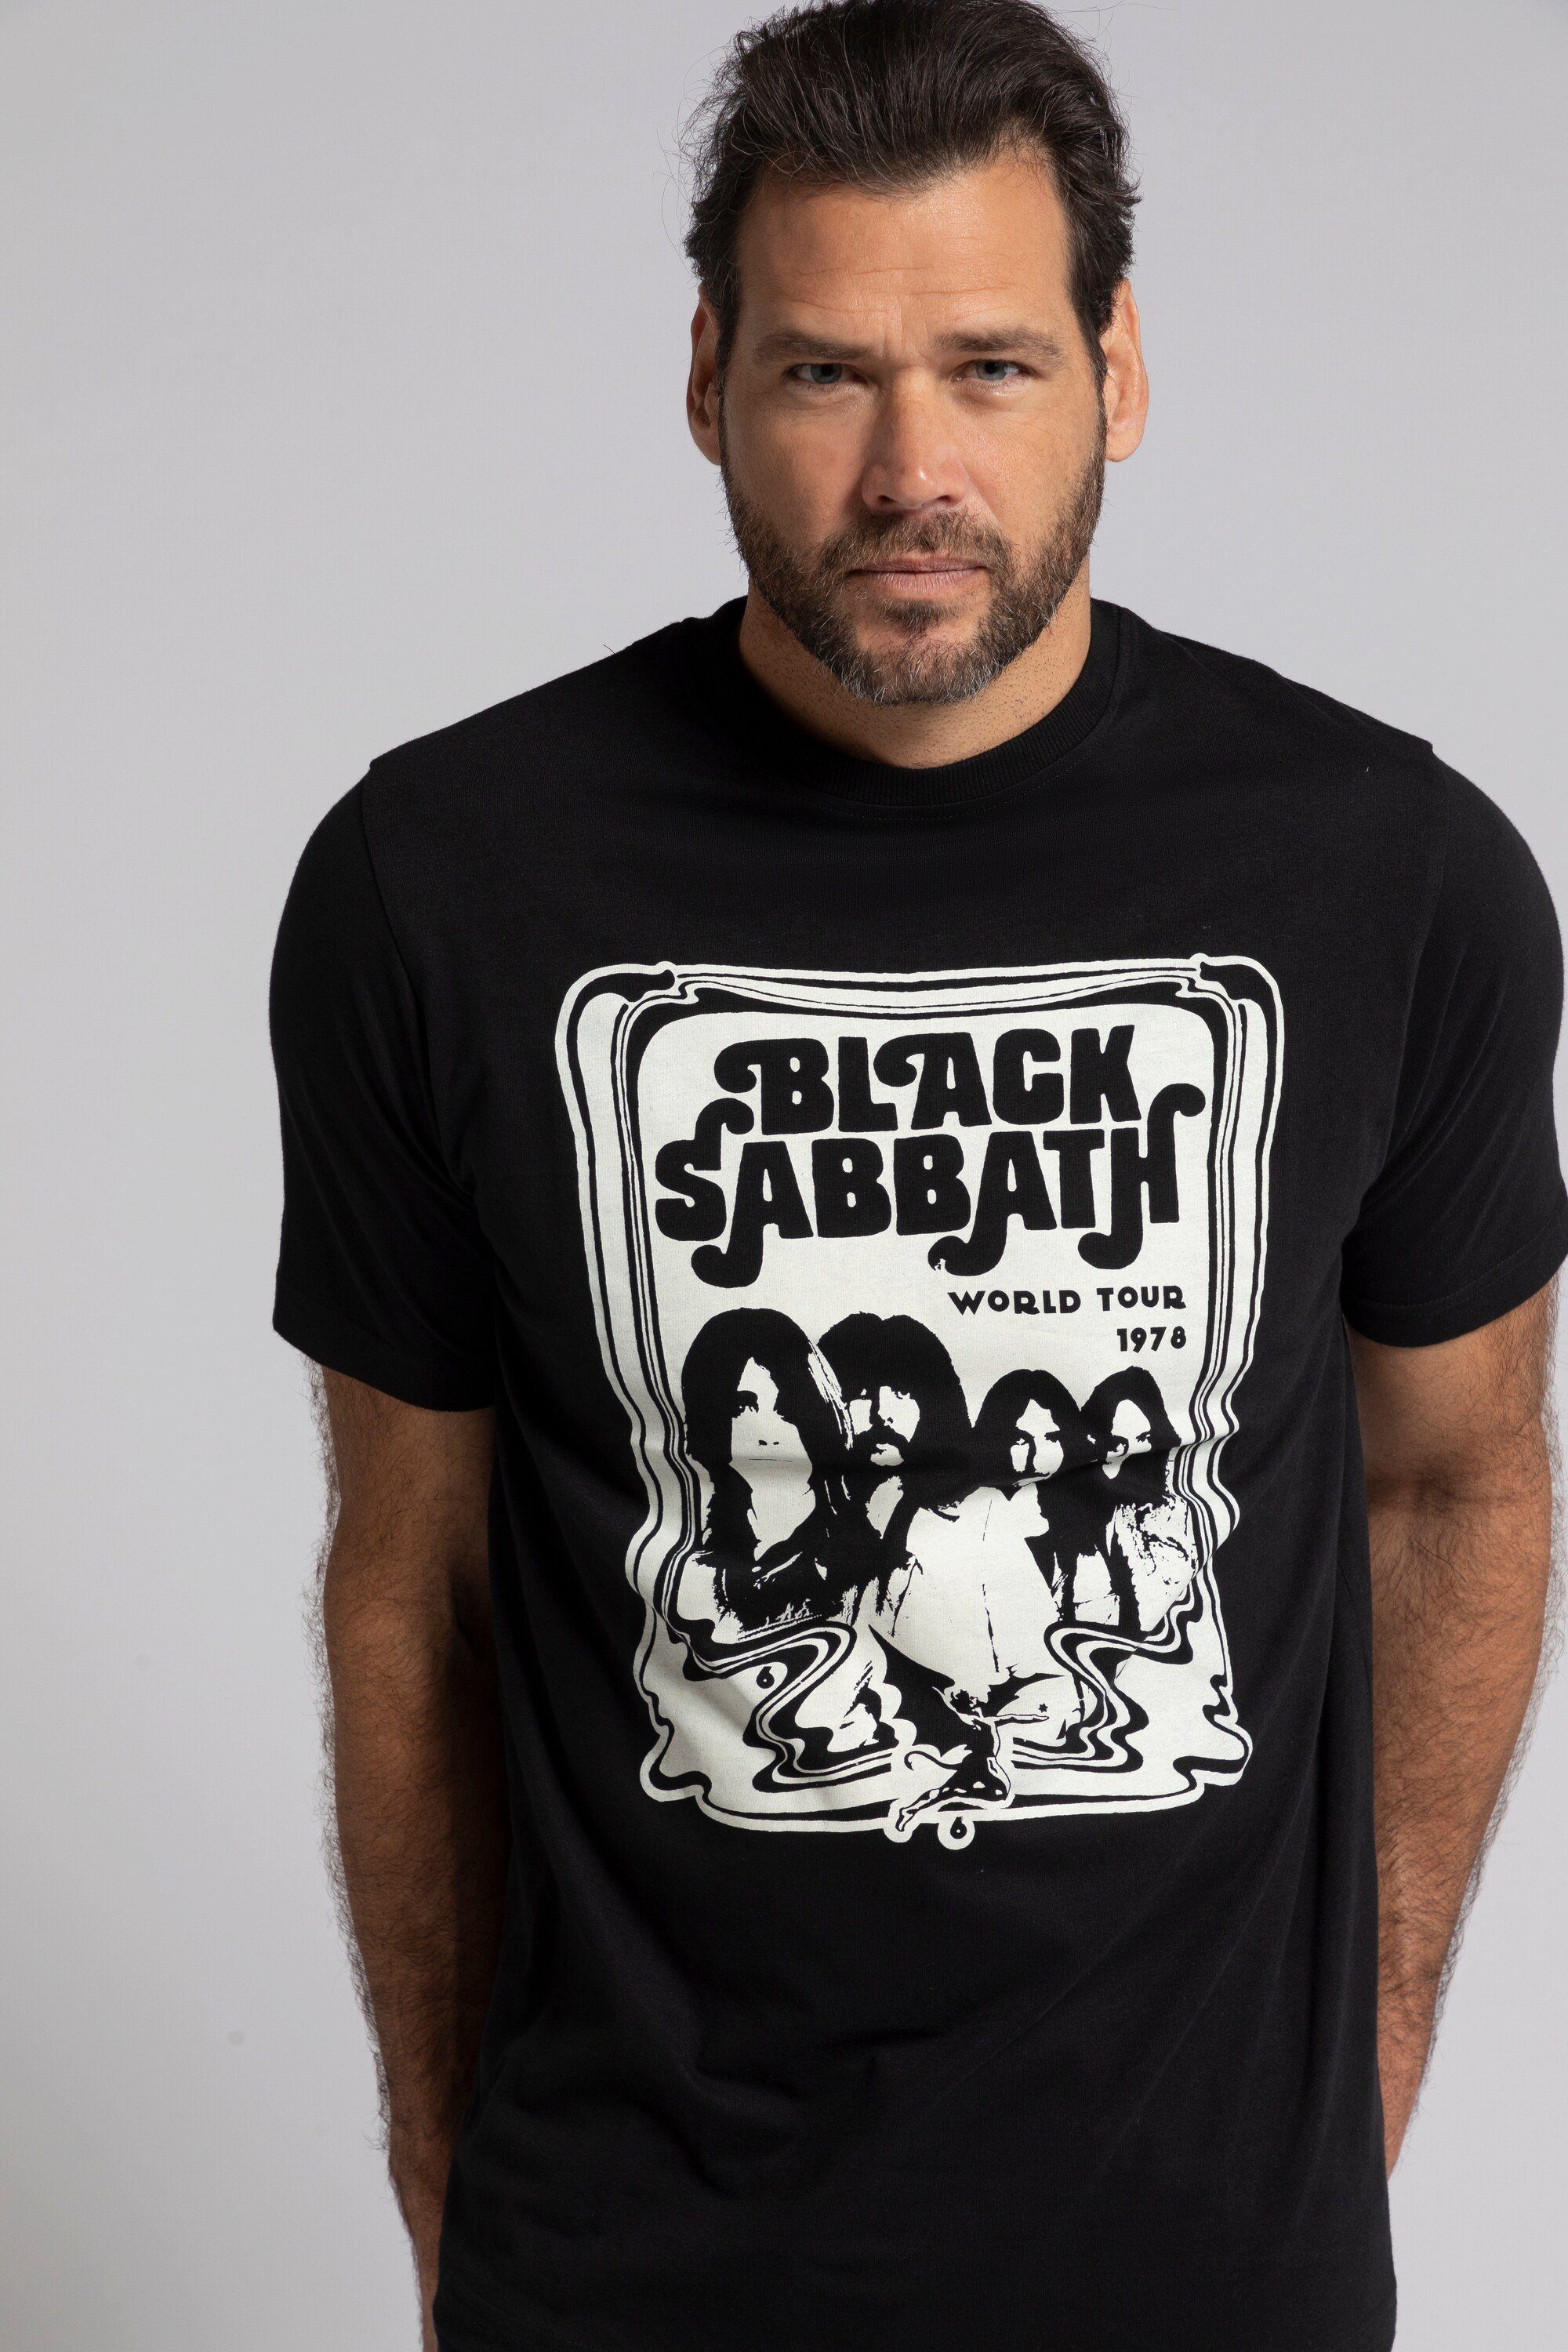 JP1880 T-Shirt T-Shirt Bandshirt Halbarm Black Sabbath